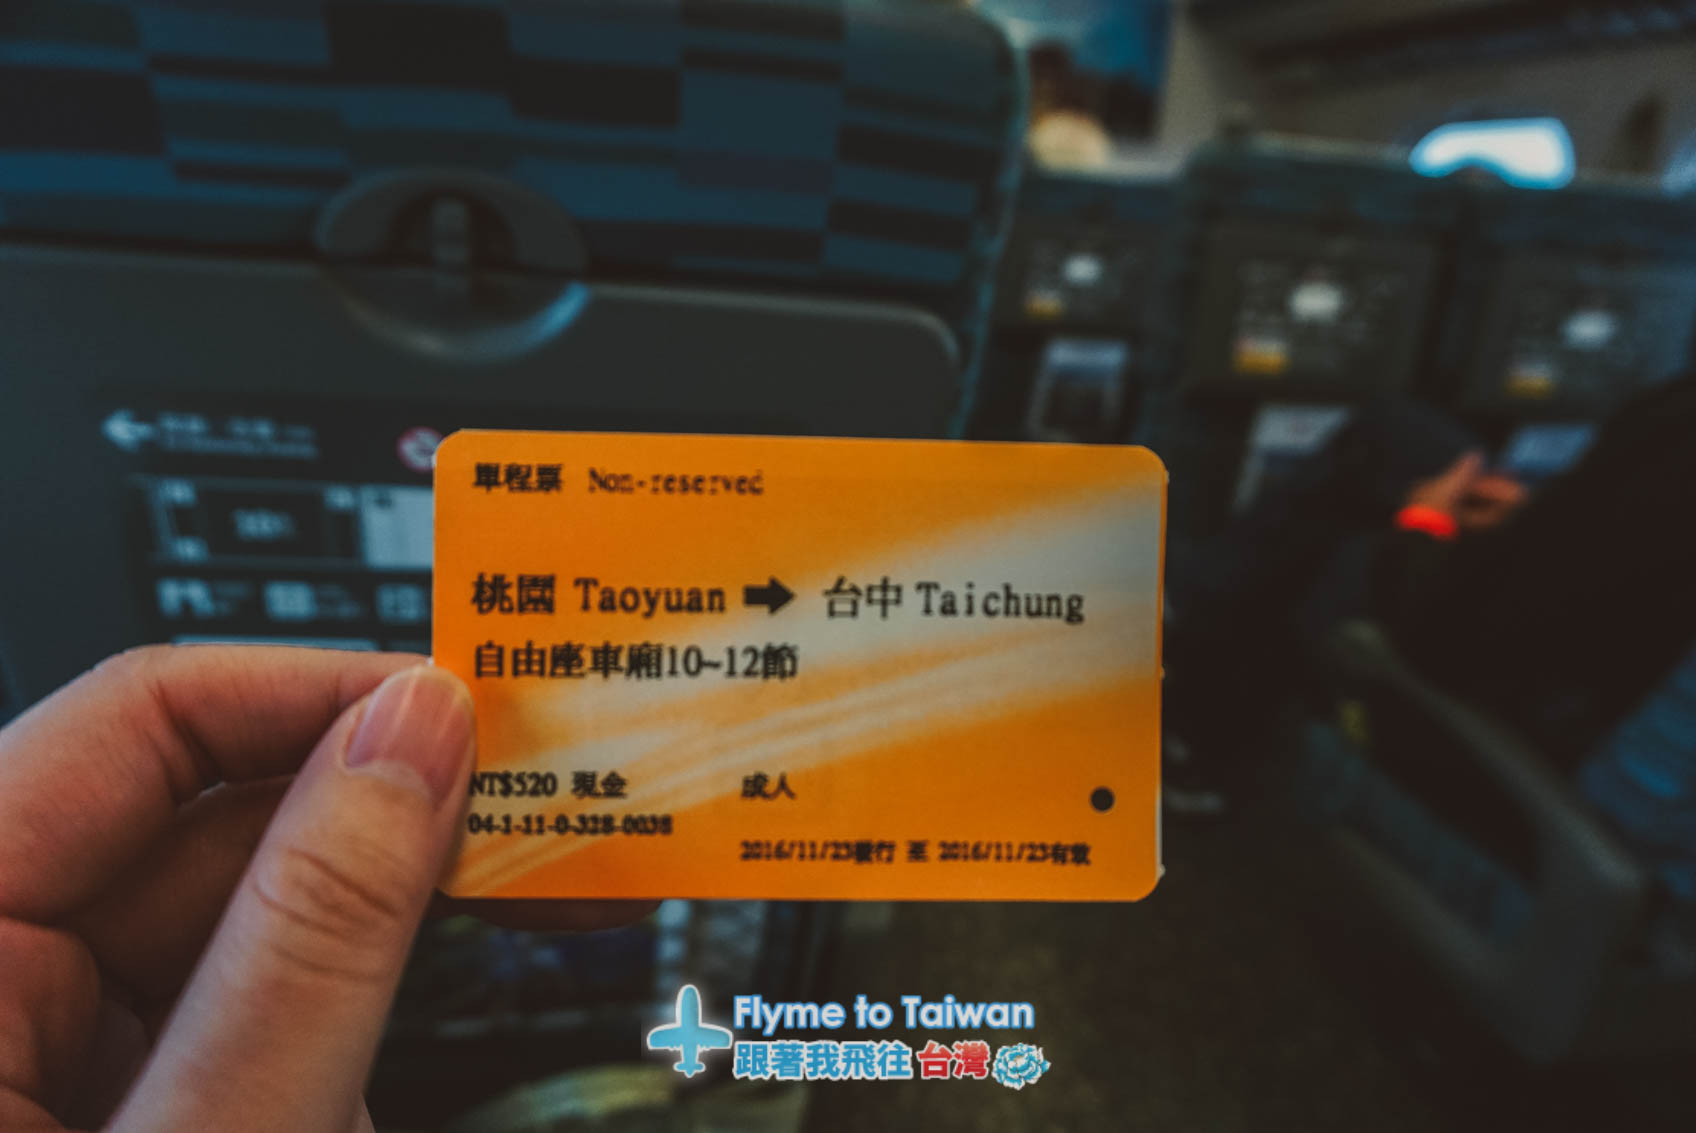 ขึ้นรถไฟความเร็วสูงจากเถาหยวนเพื่อไปที่สถานี Taichung และนั่รถบัสต่อไปฟาร์มชิงจิ้ง